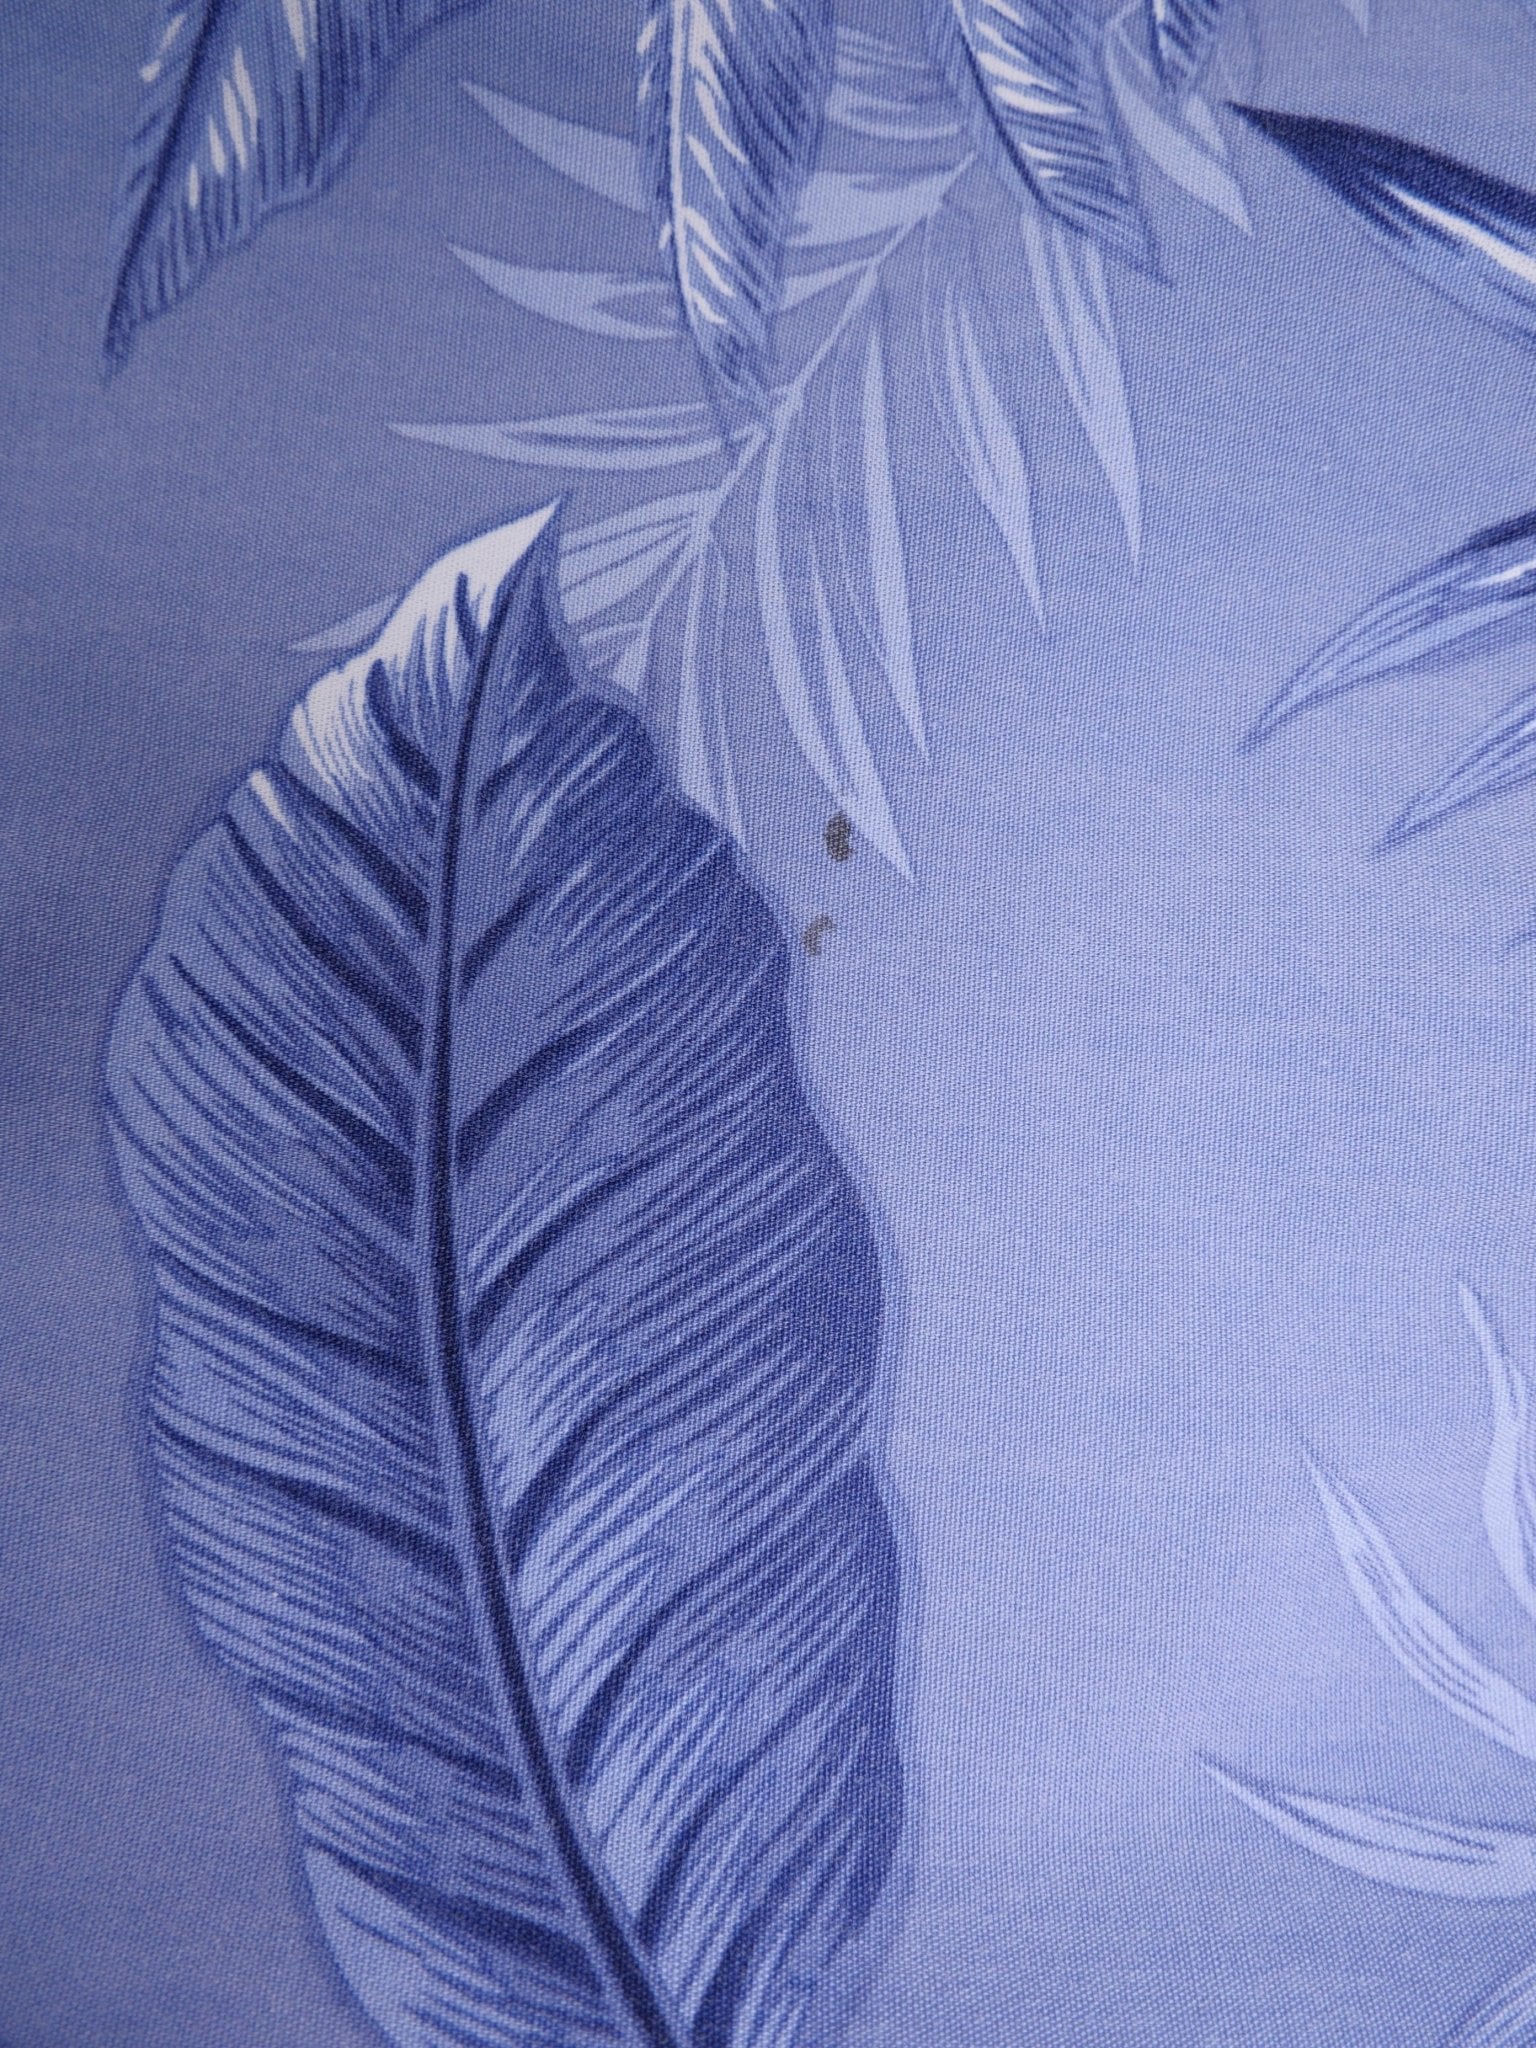 'Leaves' printed Pattern blue s/s Hemd - Peeces